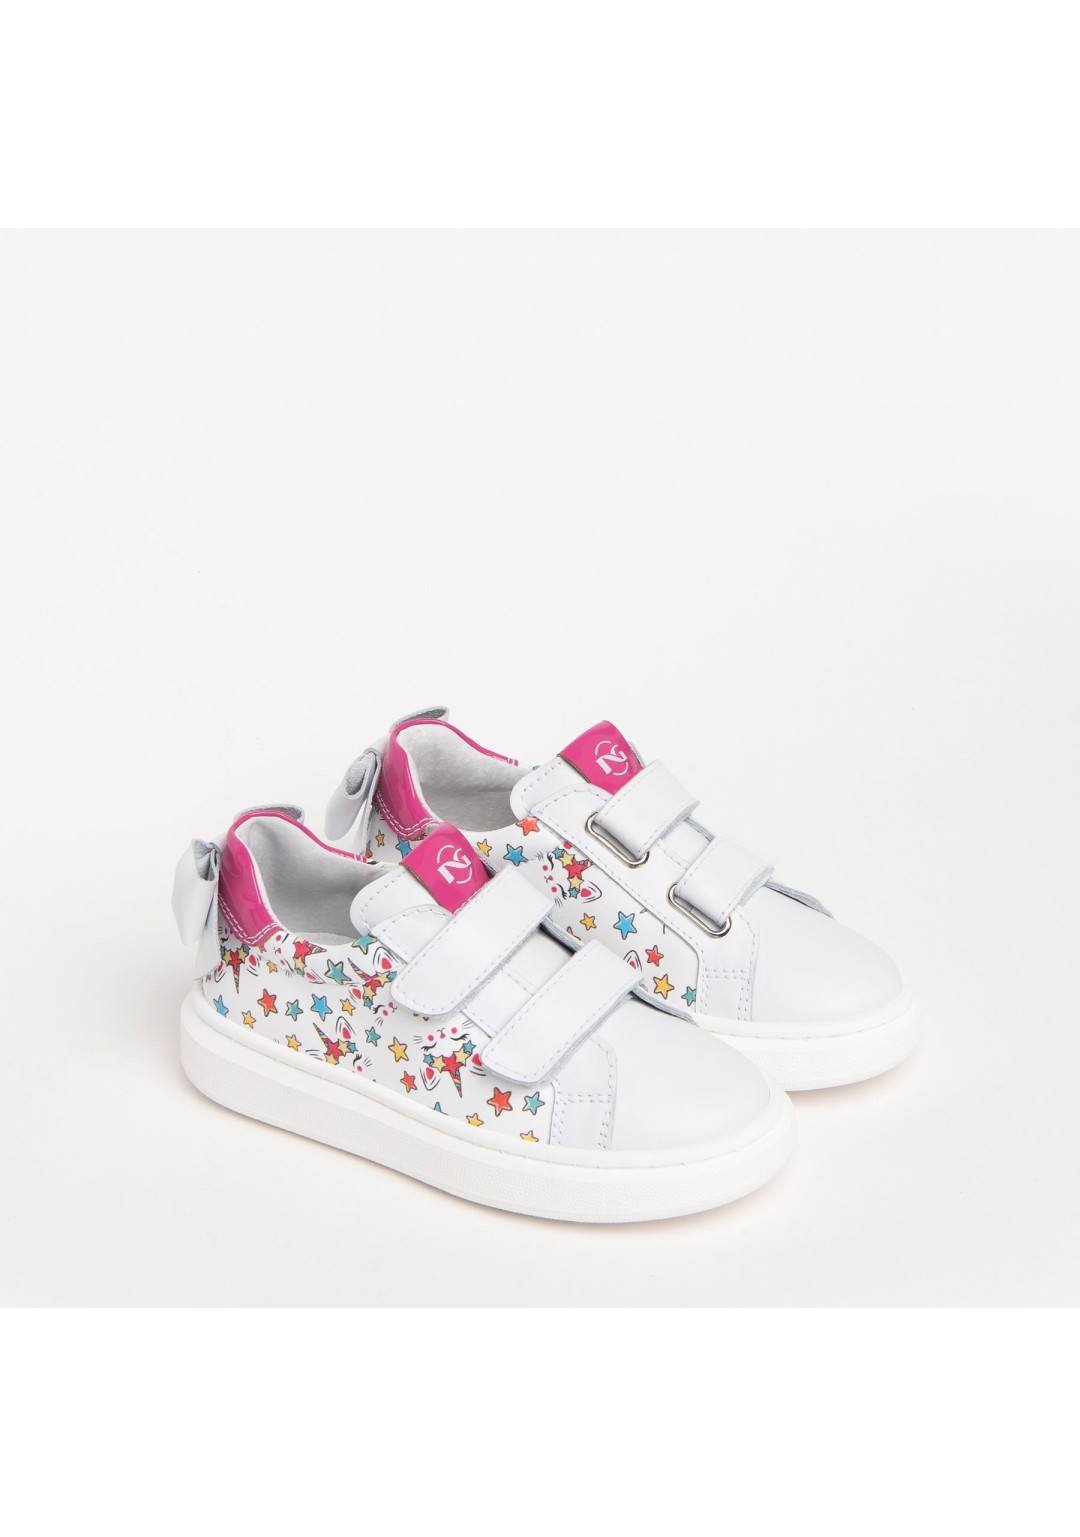 NEROGIARDINI - Sneakers Logata - Bambine e ragazze - 377F